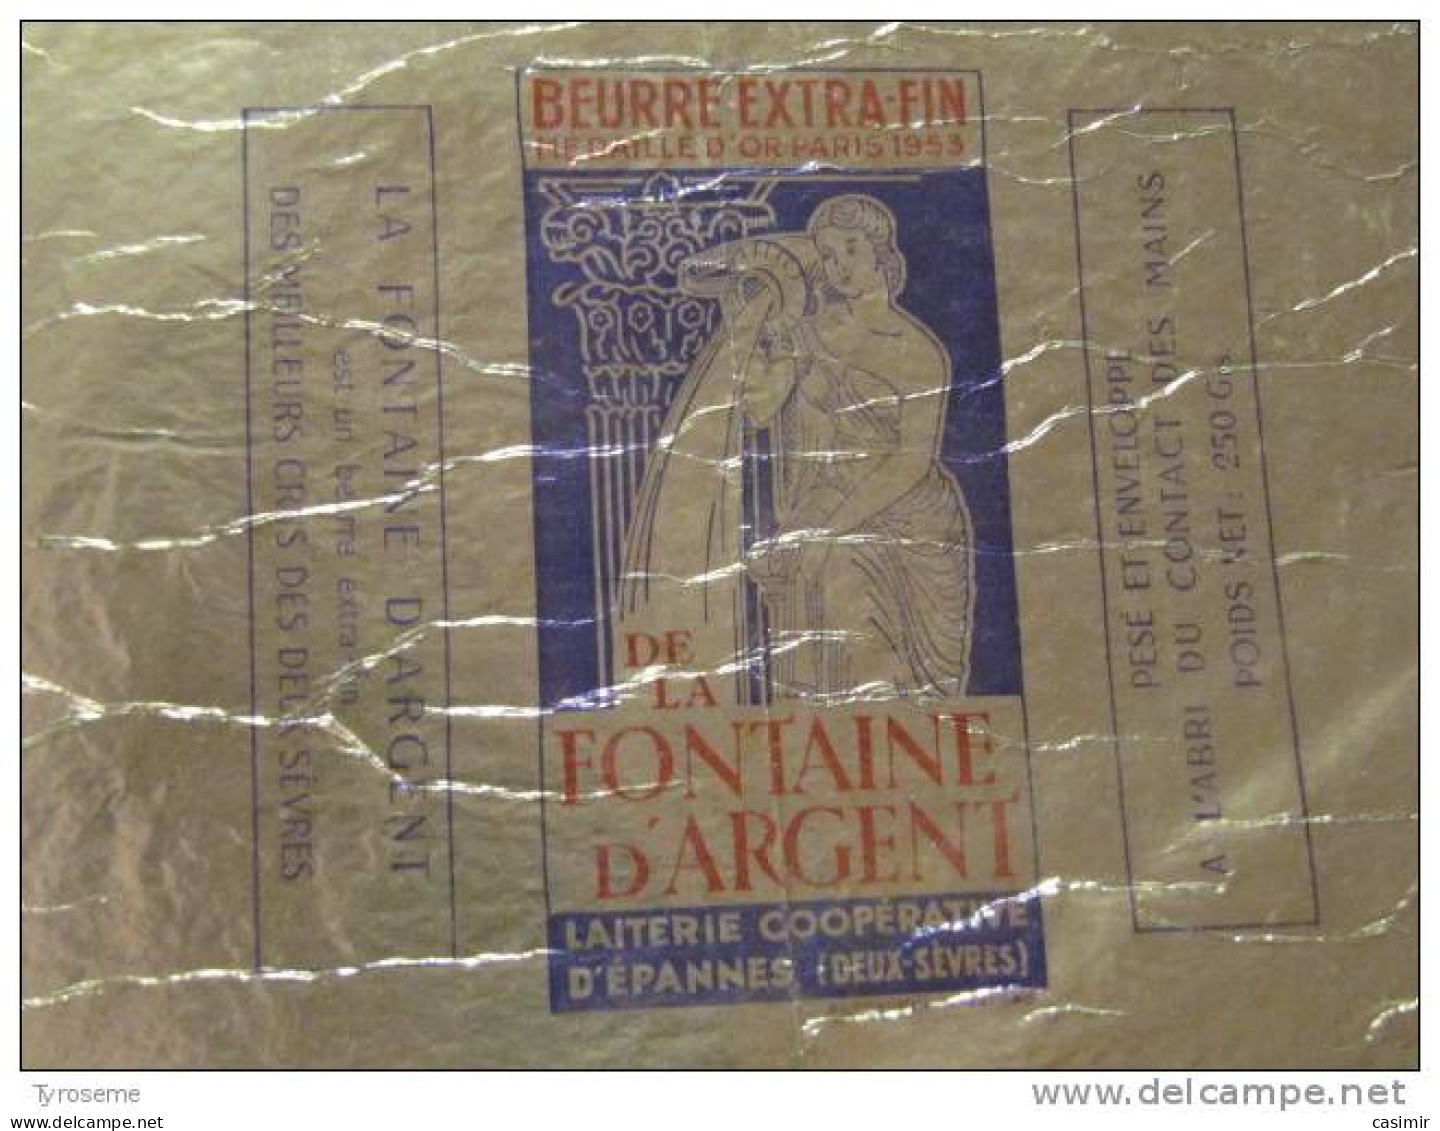 T741 / étiquette D'emballage Beurre De La Fontaine D'Argent à Epannes - Deux-Sèvres - Fatture